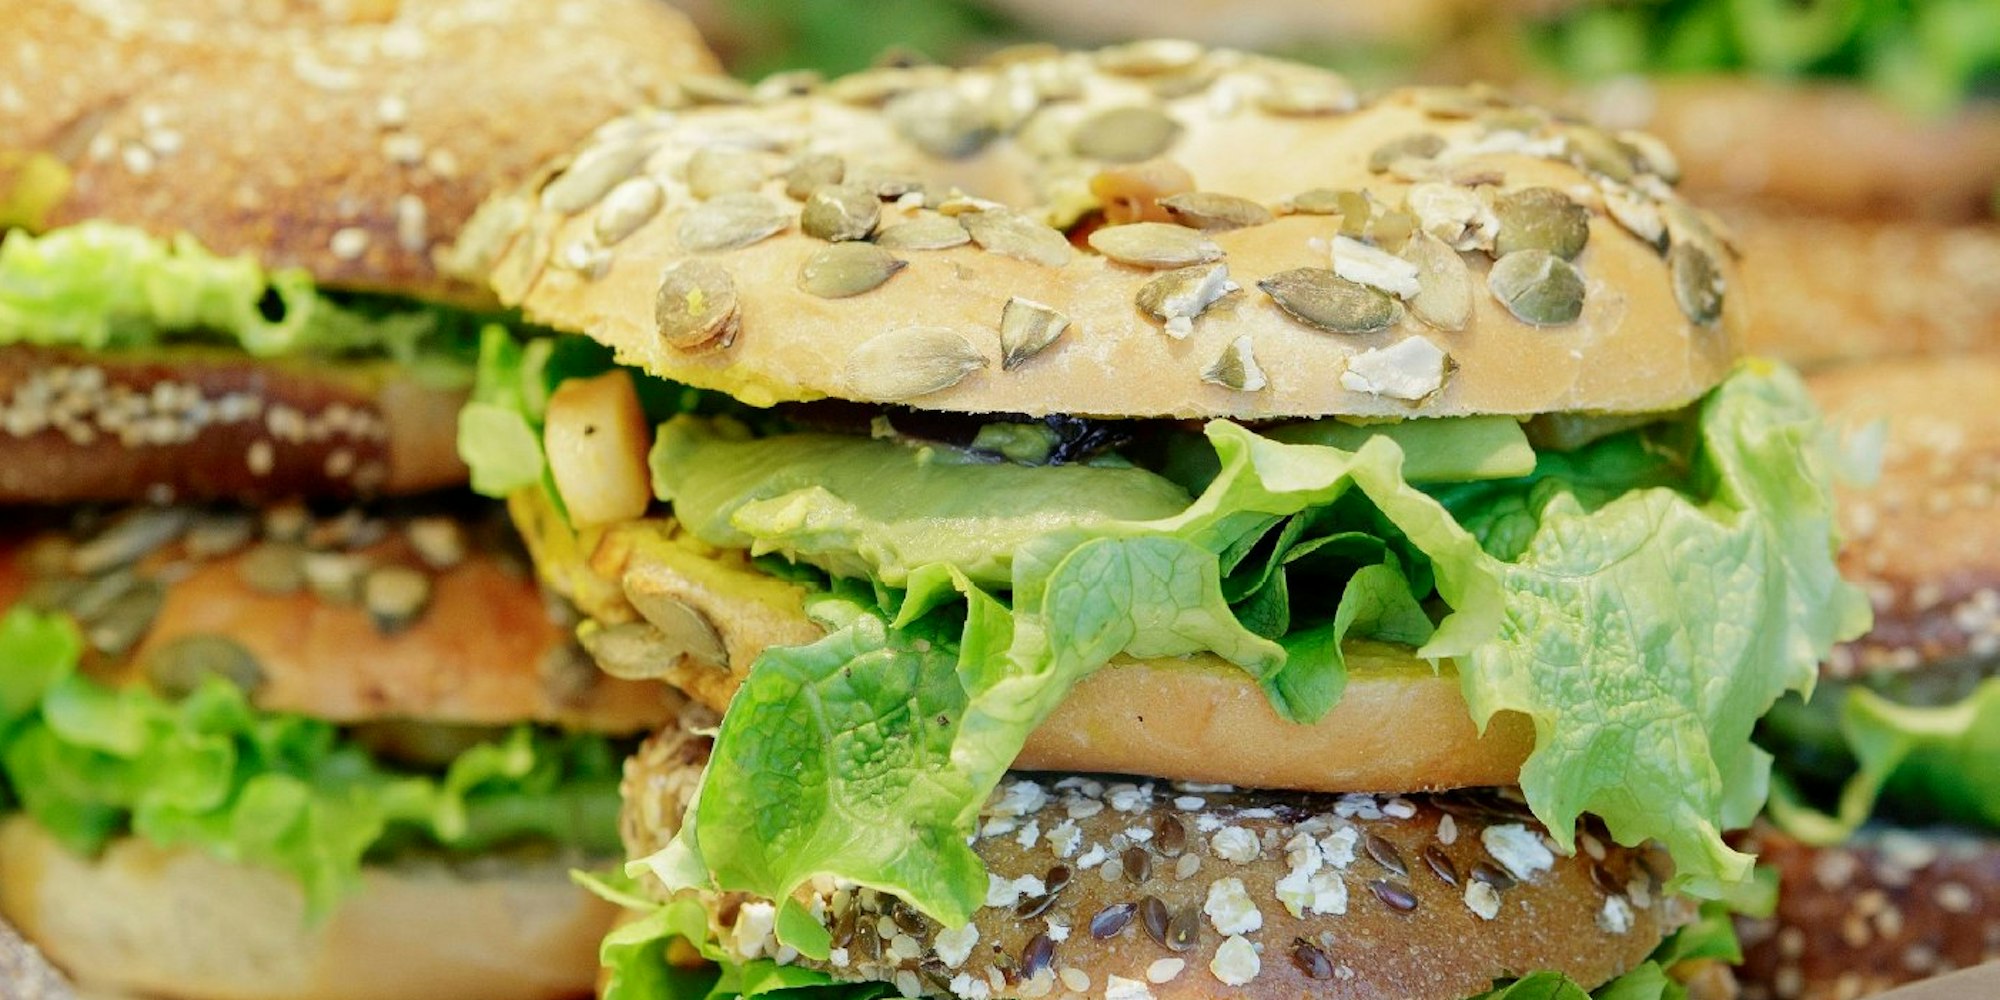 Lecker ohne Käse oder Wurst: Ein Bio-Bagel im Sortiment eines veganen Supermarkts kommt allein mit pflanzlichem Belag aus.